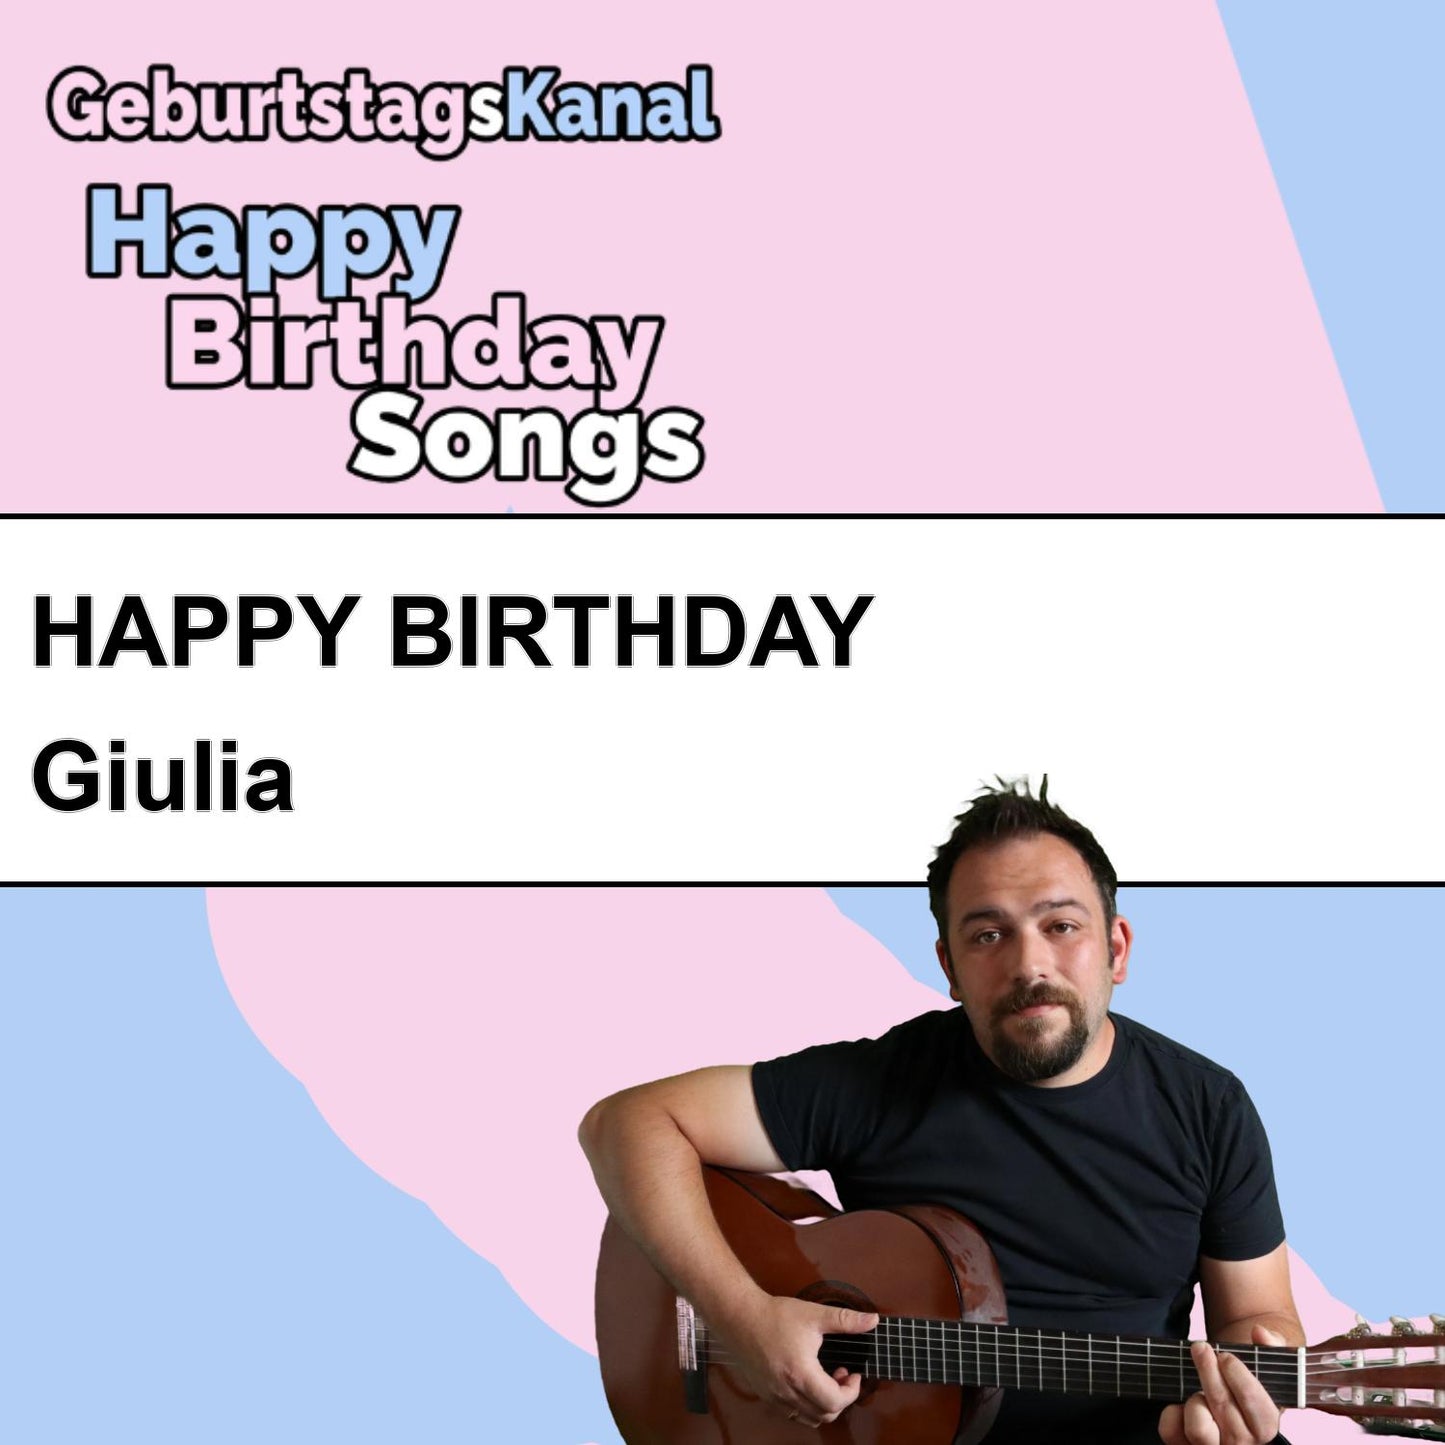 Produktbild Happy Birthday to you Giulia mit Wunschgrußbotschaft